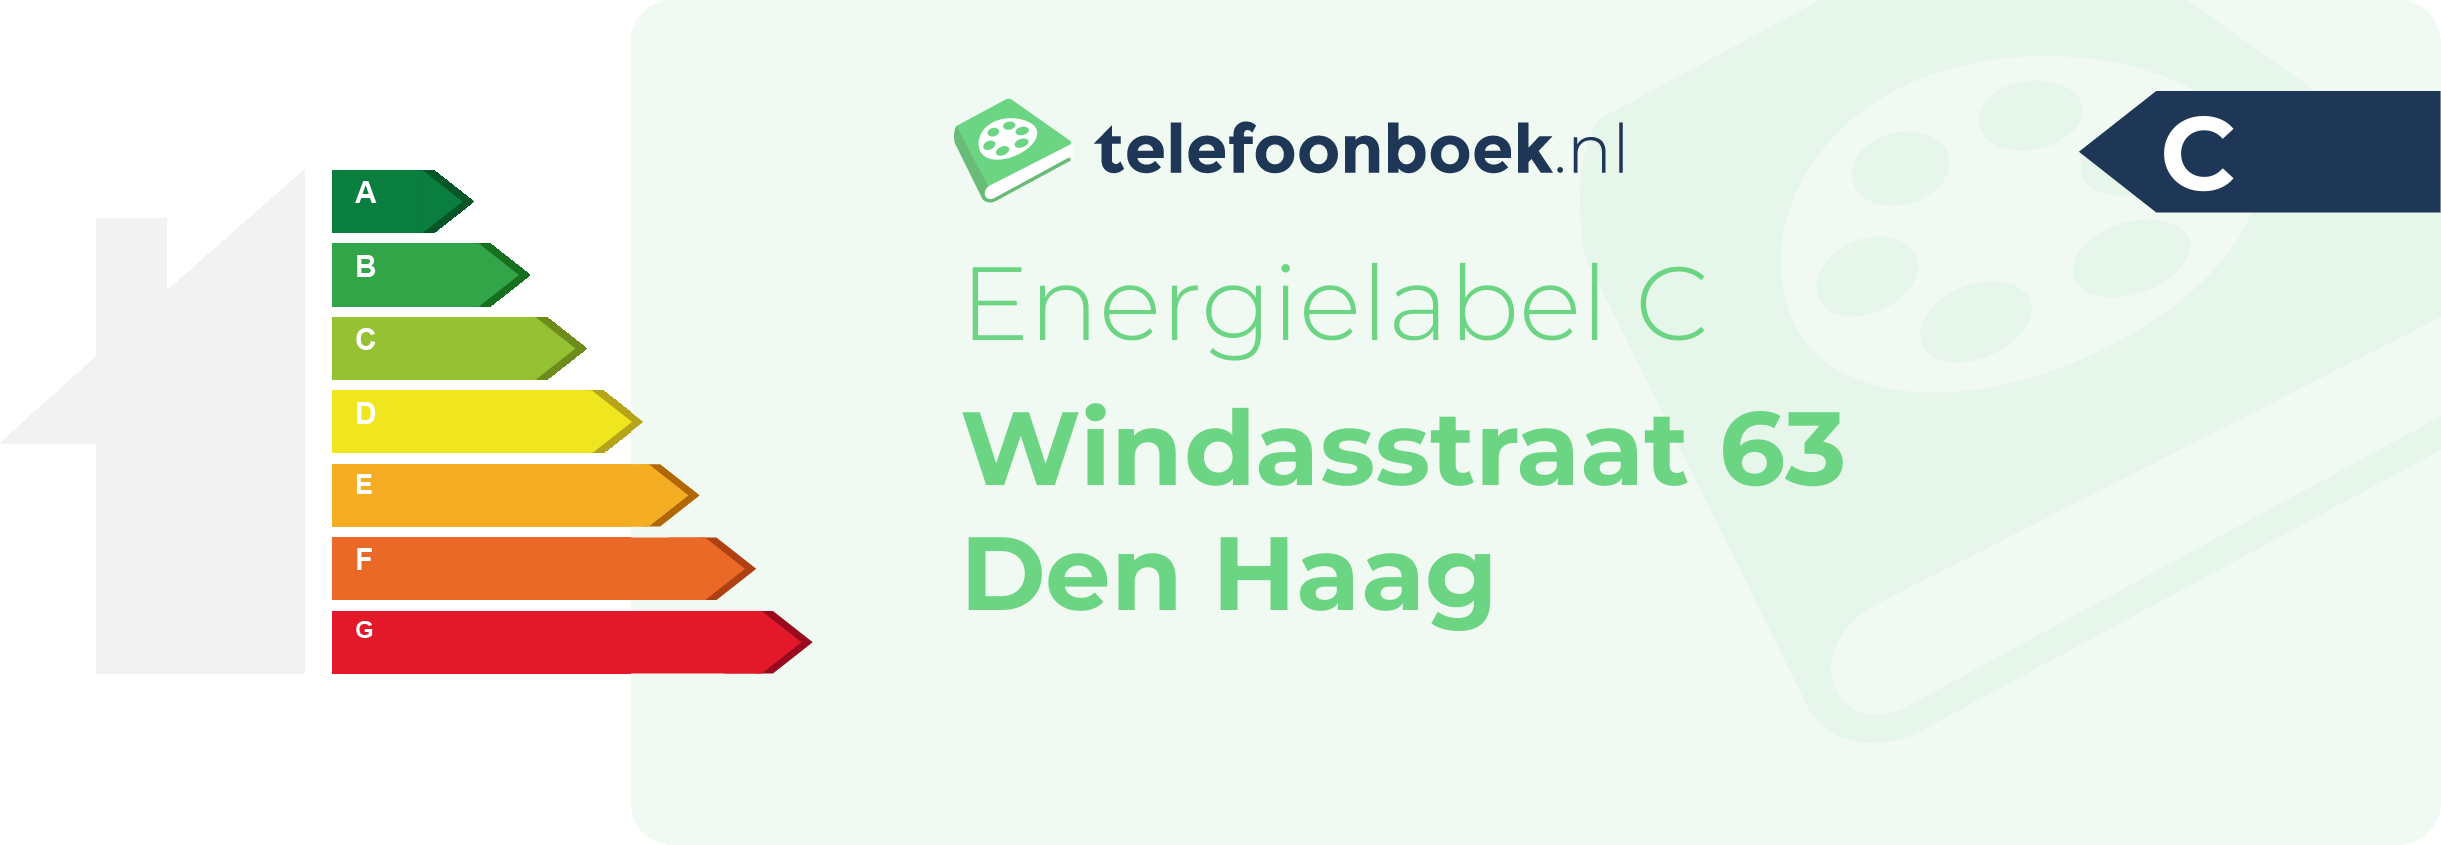 Energielabel Windasstraat 63 Den Haag